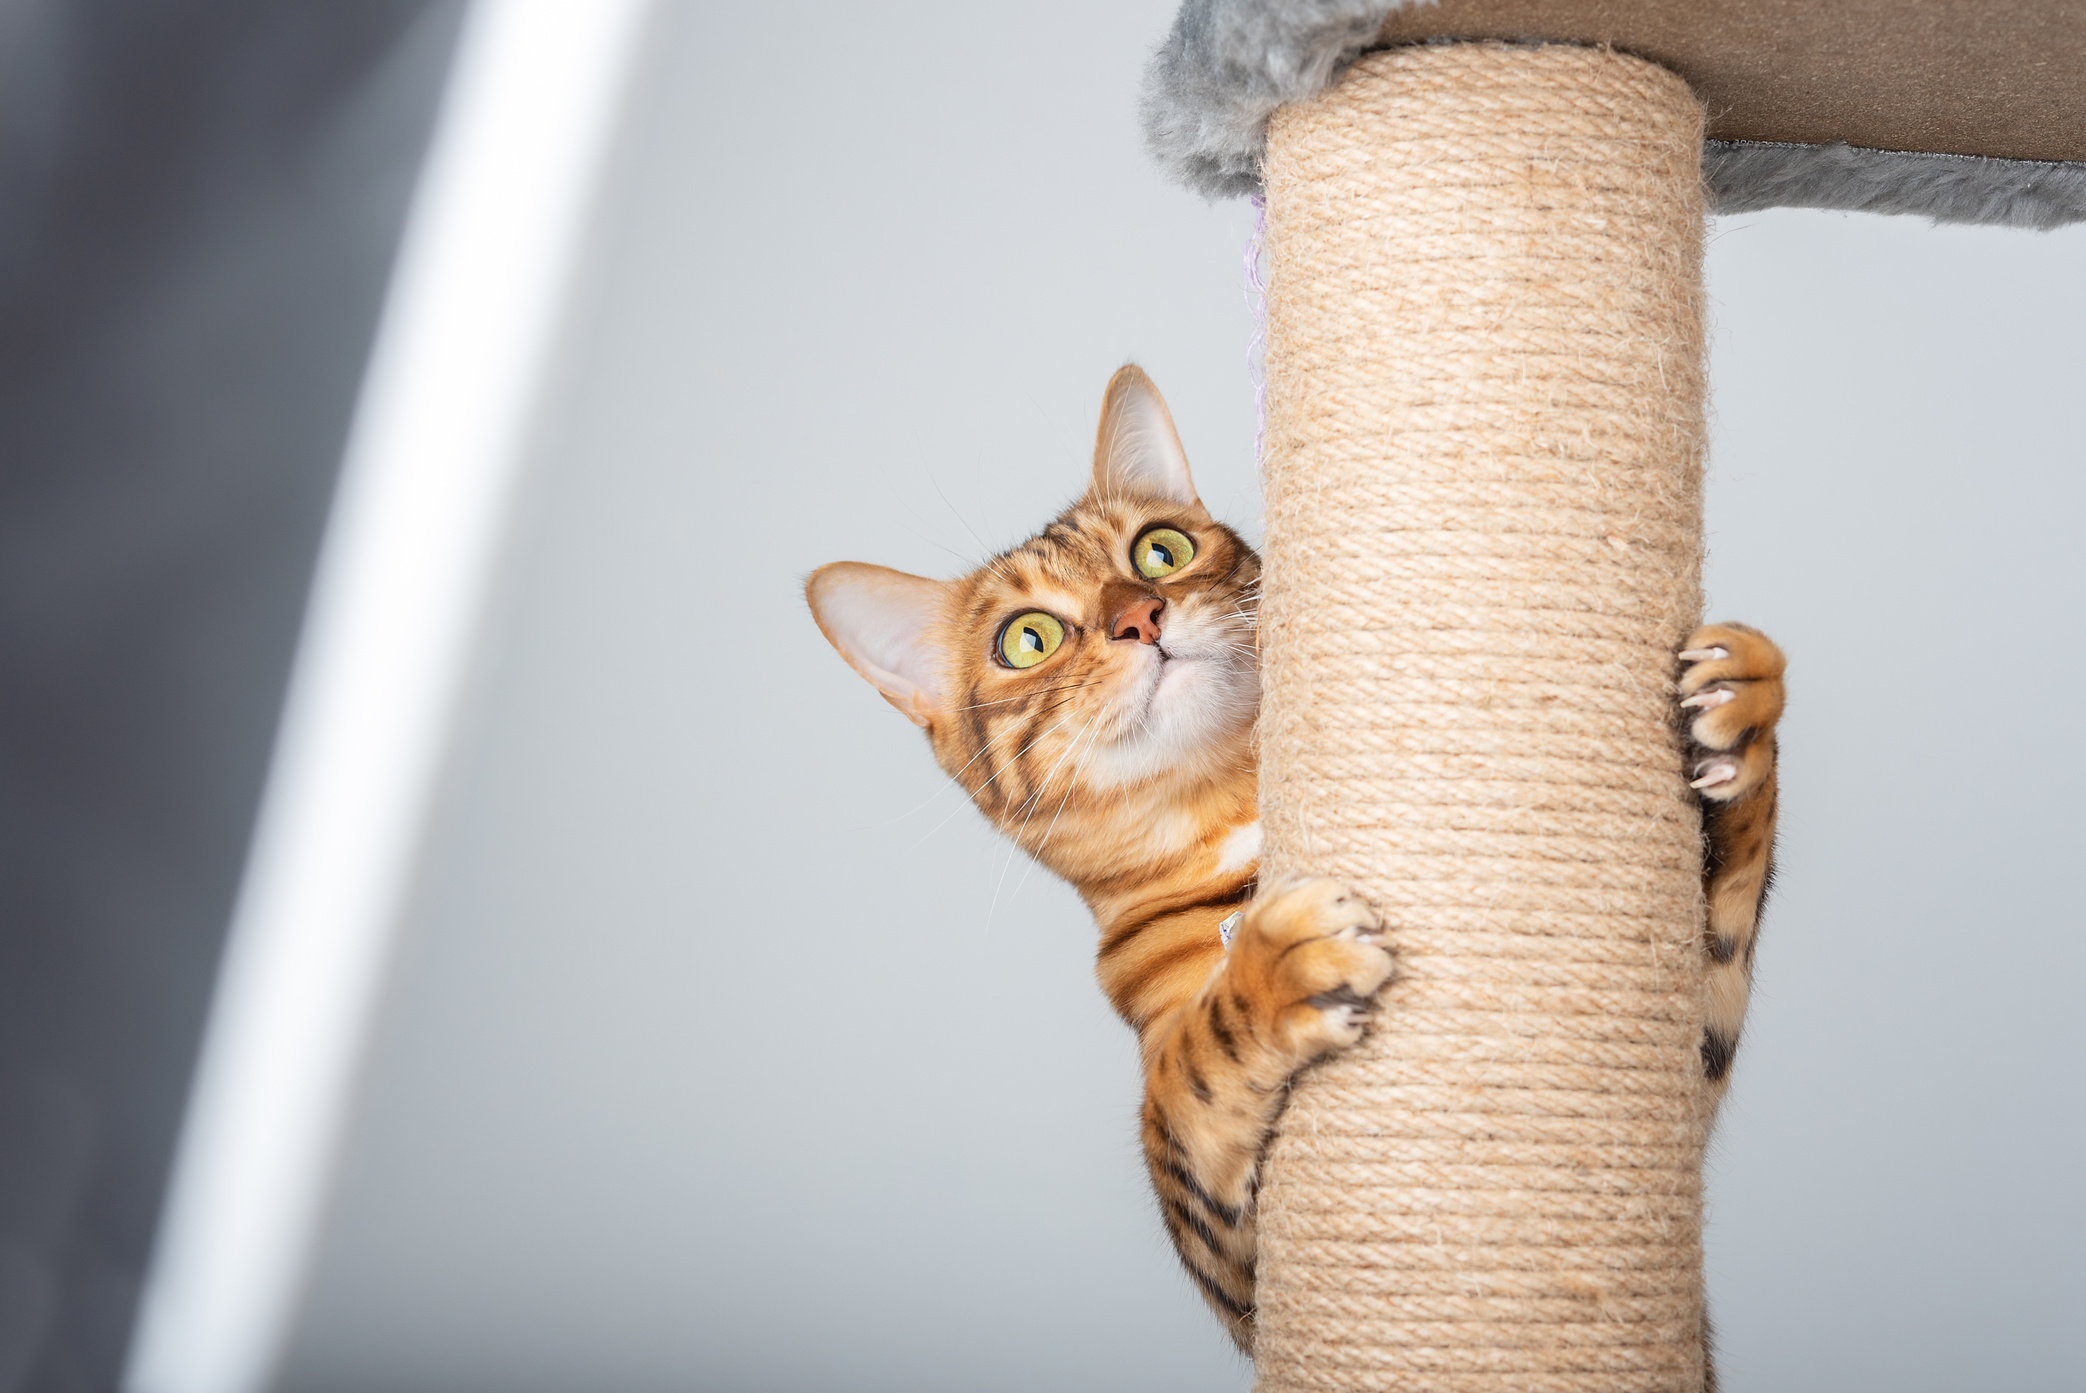 A Domestic Cat Climbs up a Cat Pole.